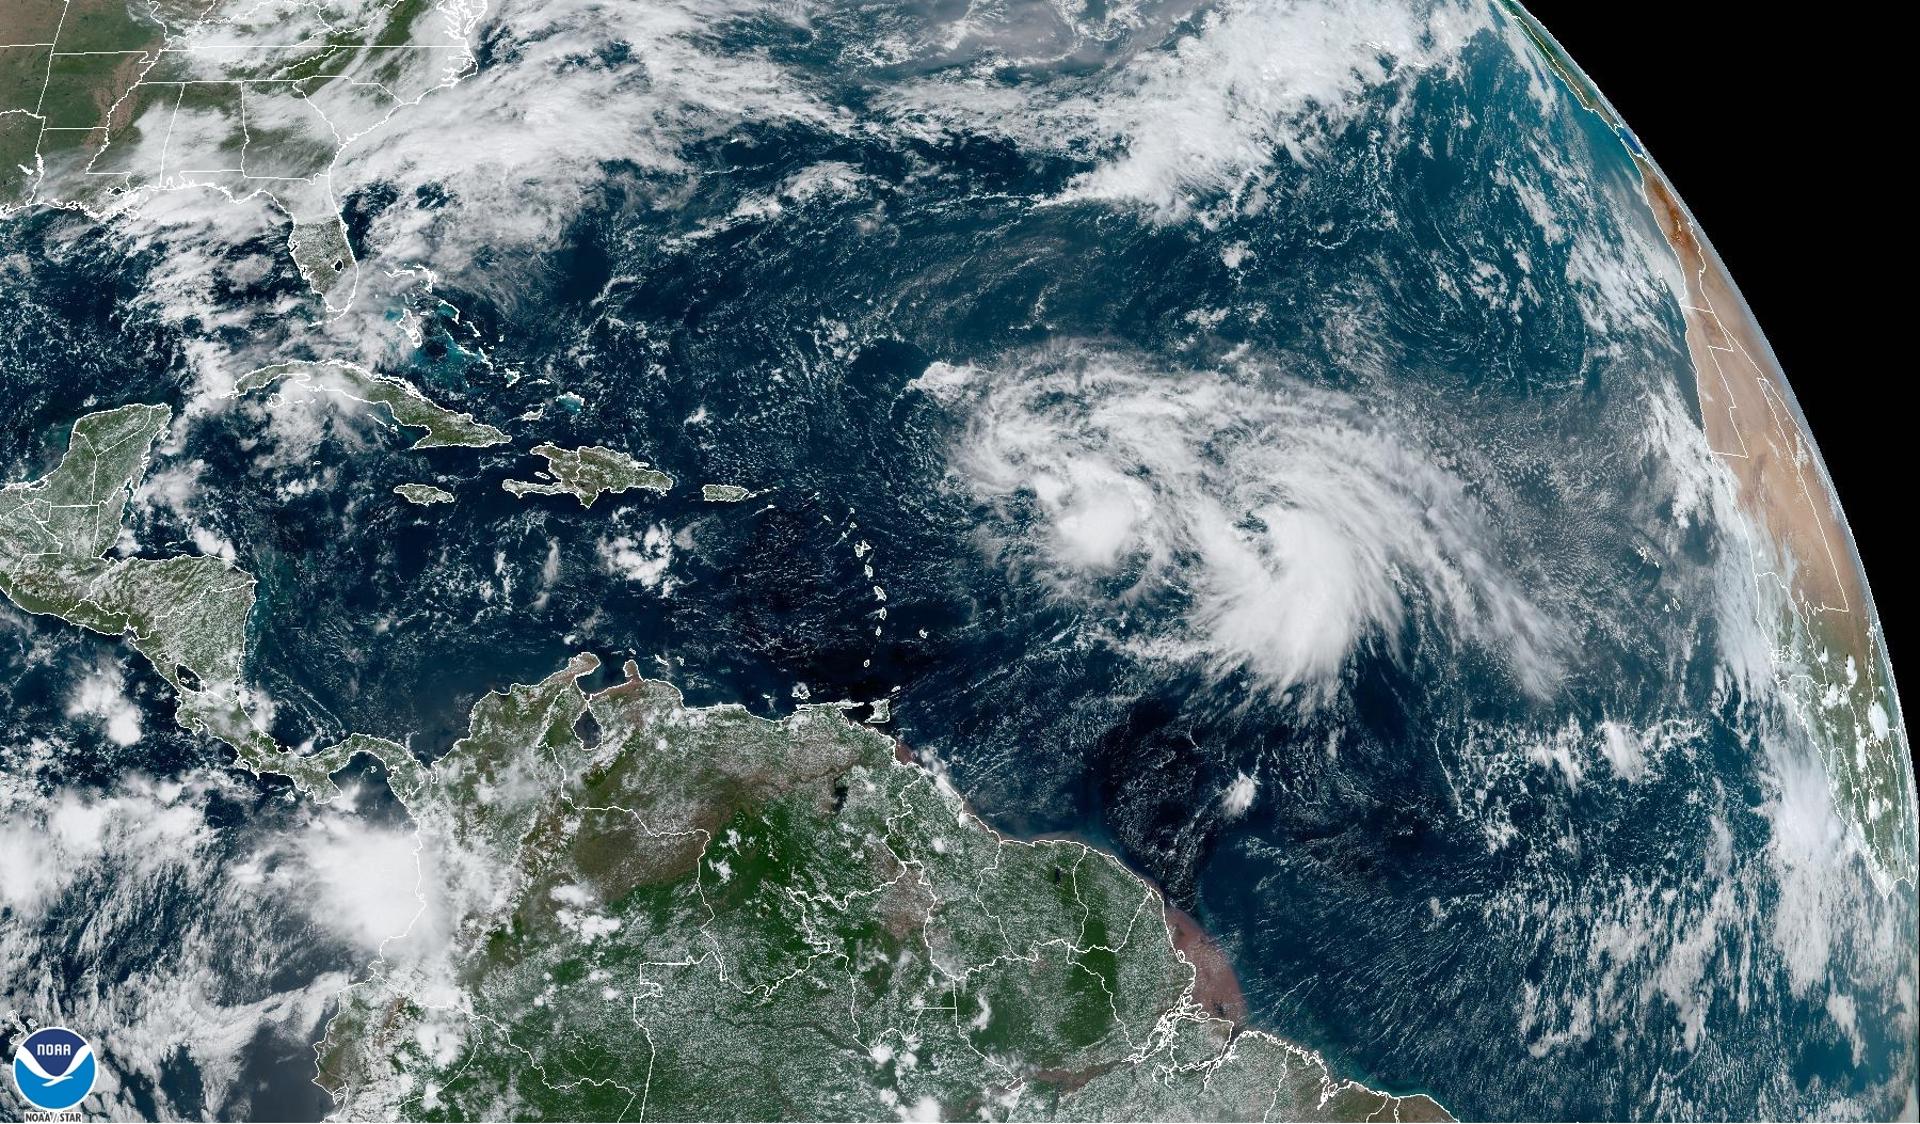 Fotografía satelital cedida por la Oficina Nacional de Administración Oceánica y Atmosférica (NOAA) a través del Centro Nacional de Huracanes (NHC) de Estados Unidos donde se muestra la localización de las tormentas tropicales Philippe y Rina en el Atlántico. EFE/ NOAA-NHC / SOLO USO EDITORIAL/ SOLO DISPONIBLE PARA ILUSTRAR LA NOTICIA QUE ACOMPAÑA (CRÉDITO OBLIGATORIO)
